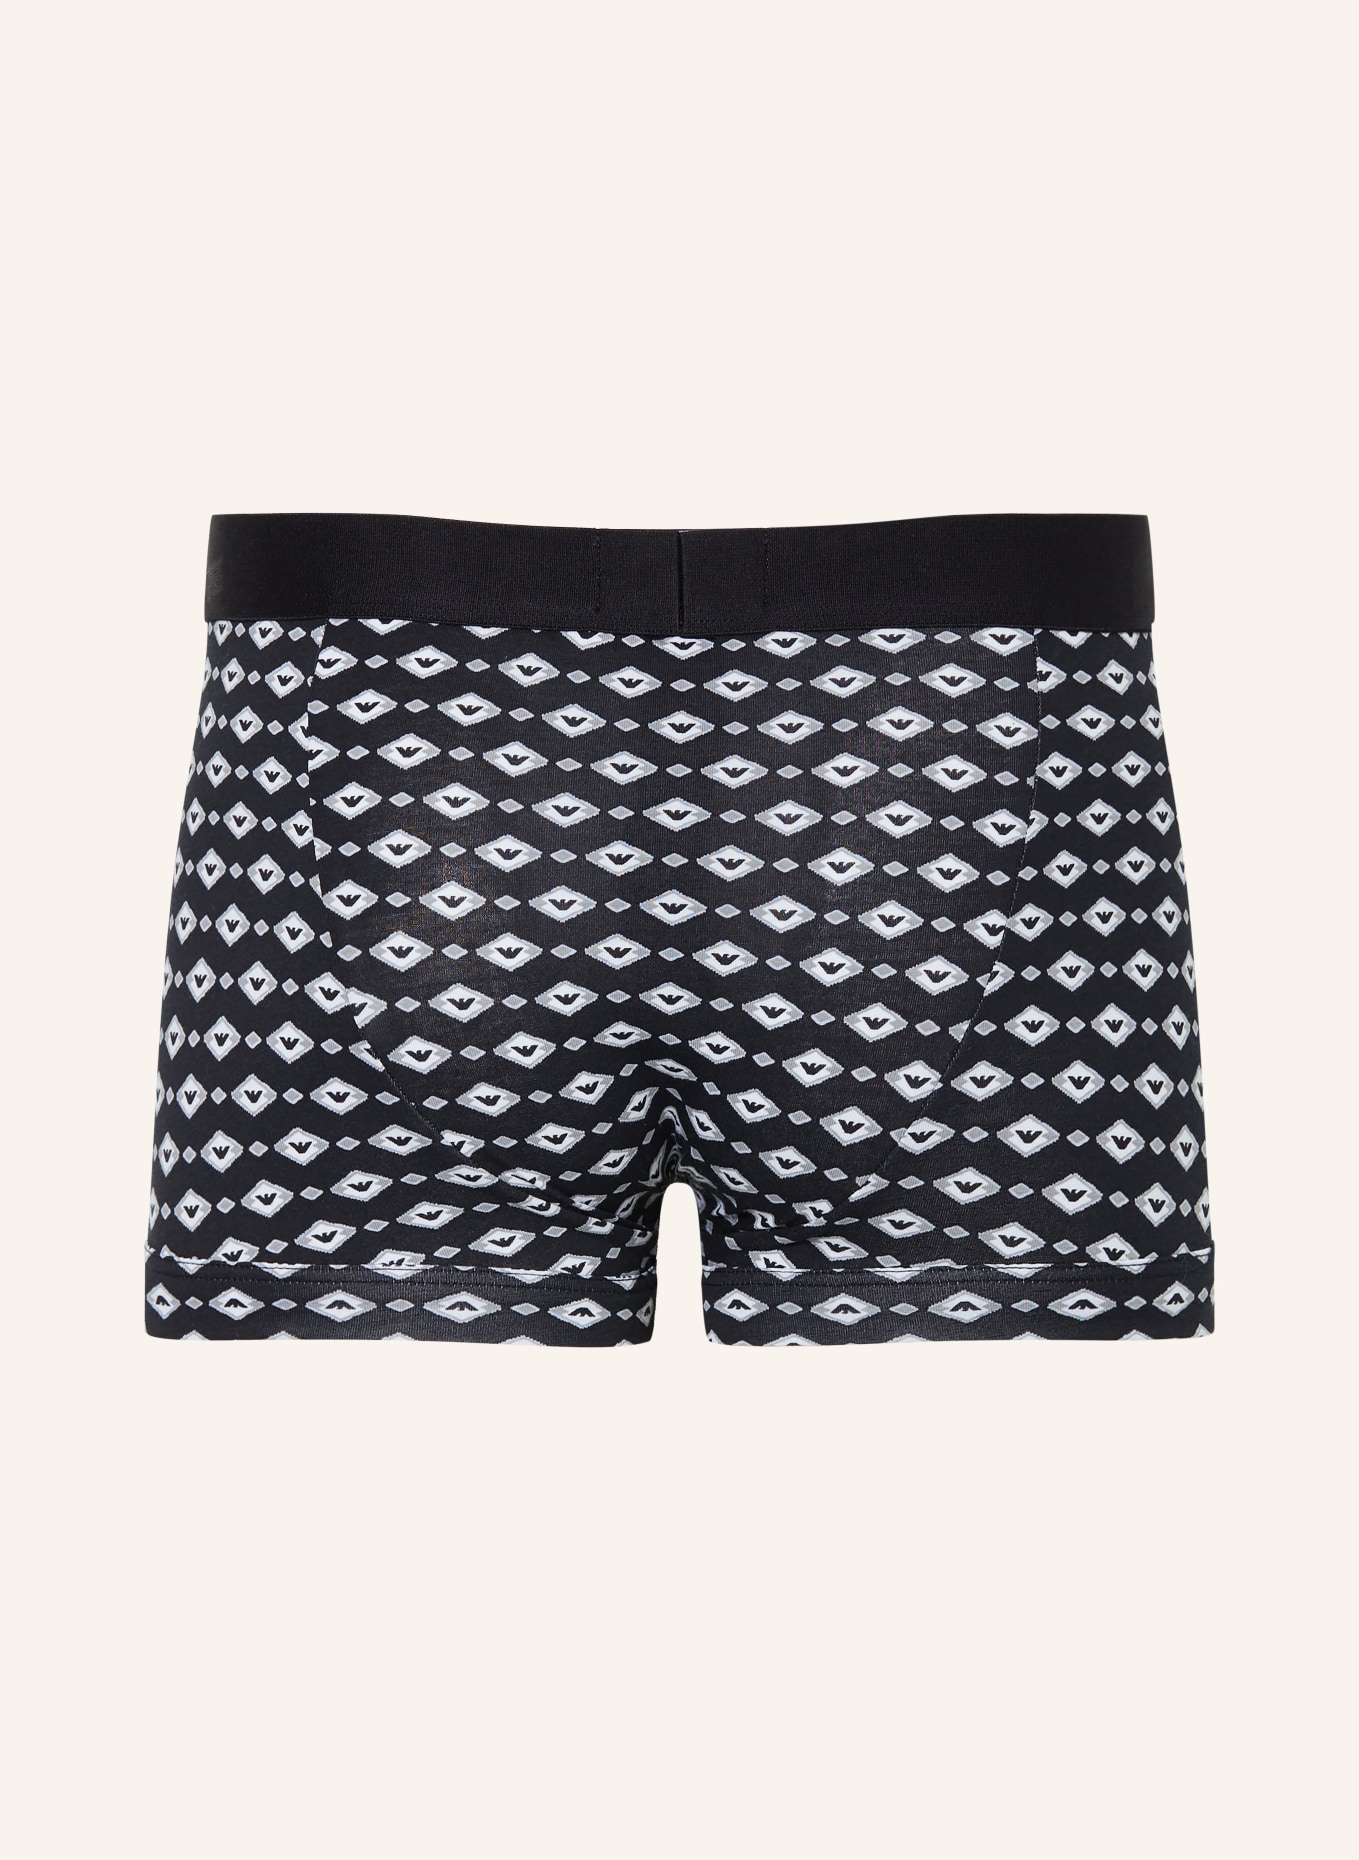 EMPORIO ARMANI 2-pack boxer shorts, Color: BLACK/ GRAY/ WHITE (Image 2)